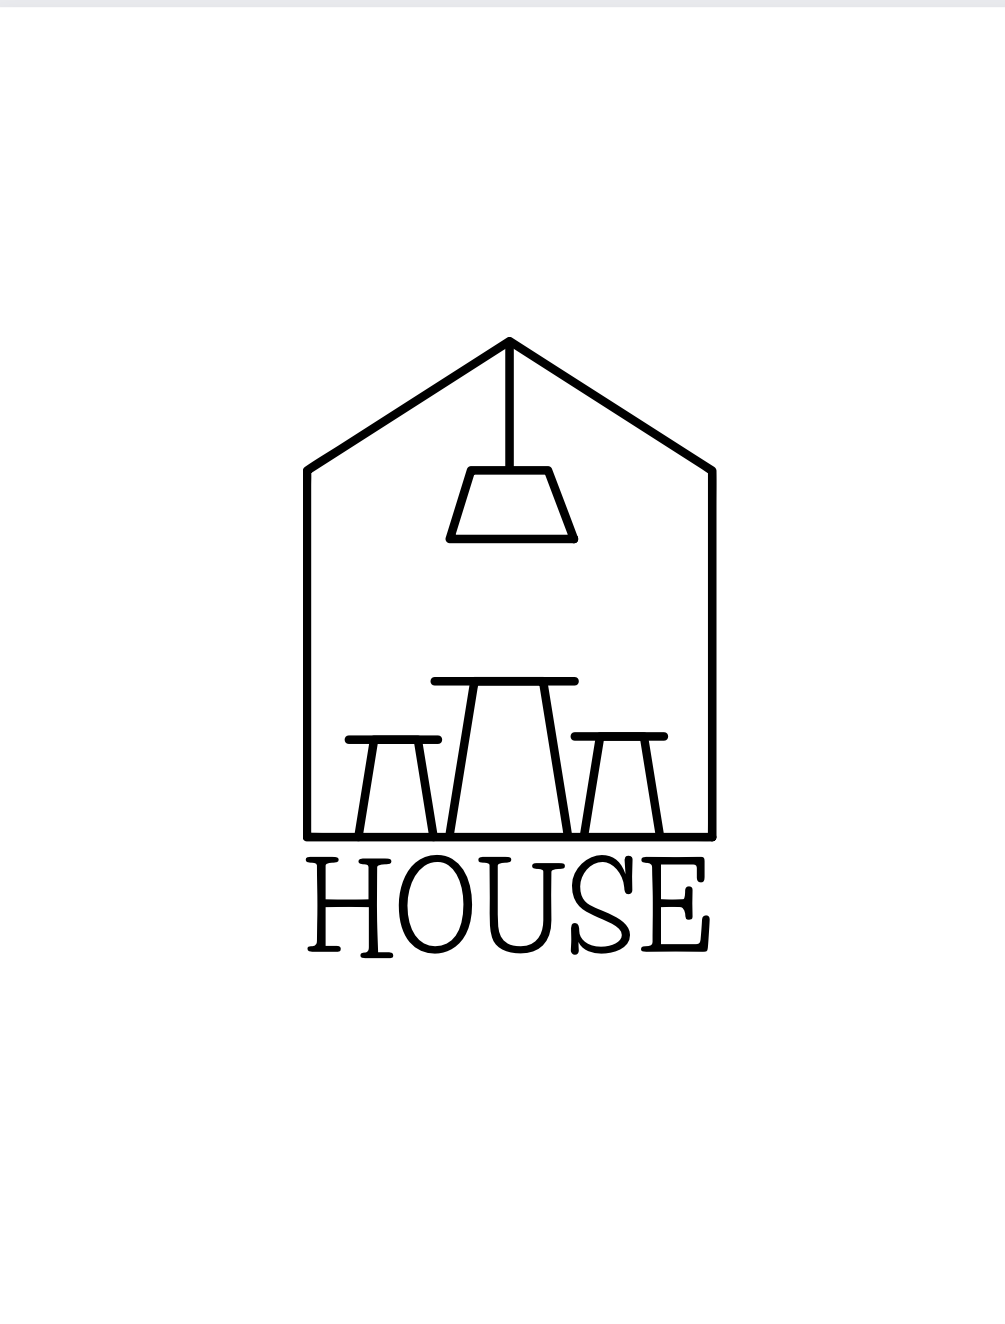 HOUSE at Hudson